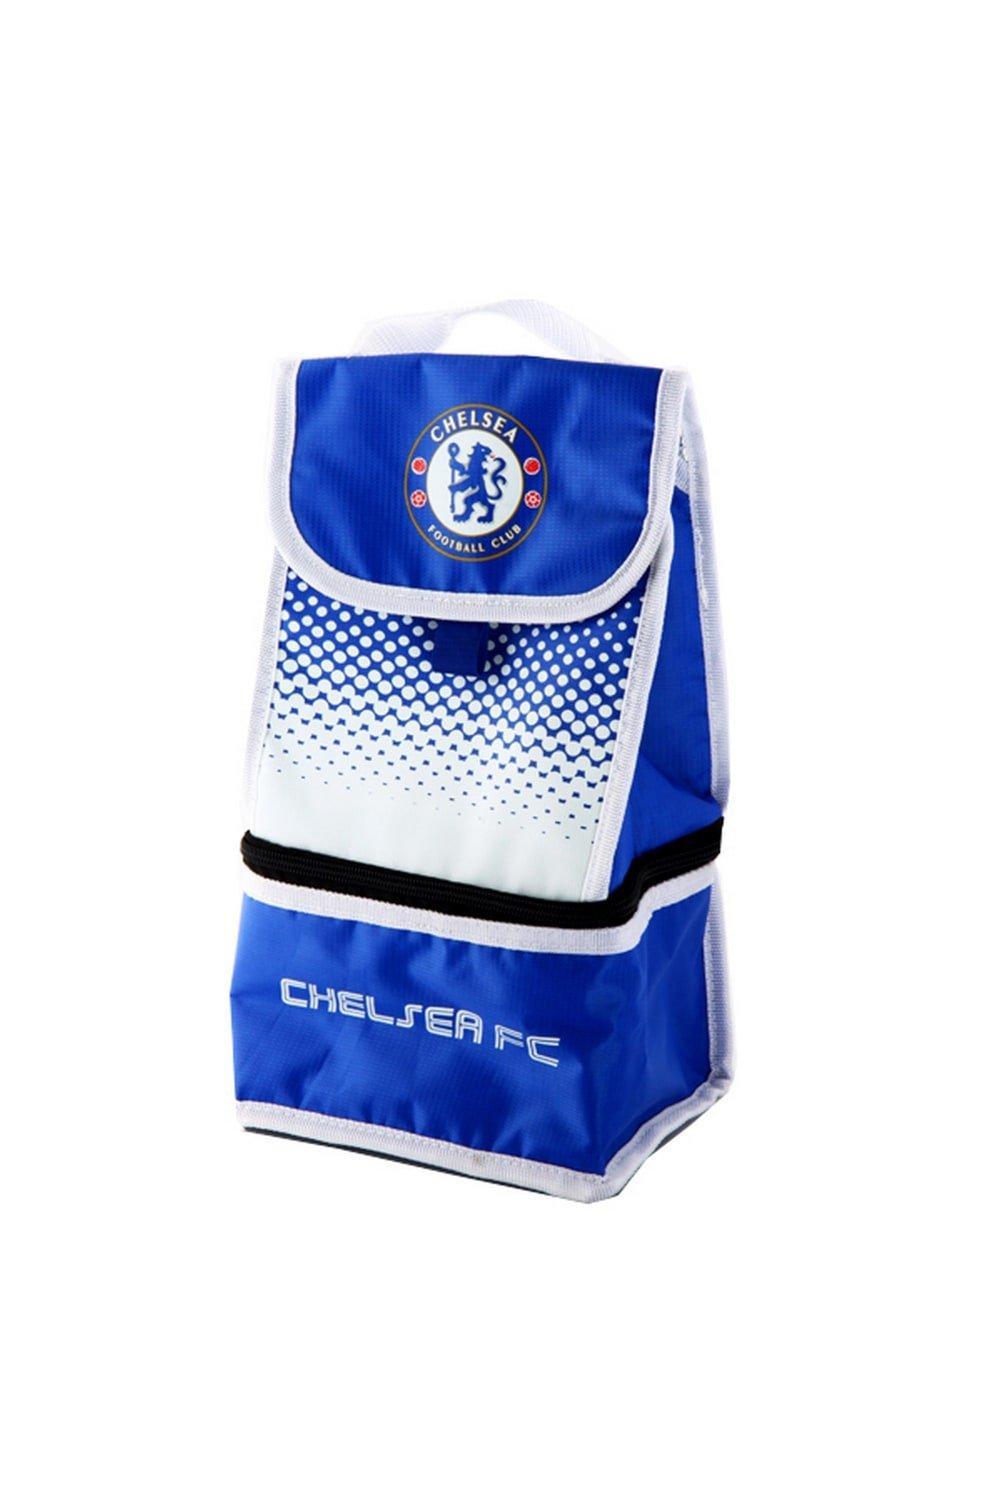 Официальная изолированная сумка для обеда с футбольным гербом Fade Chelsea FC, синий